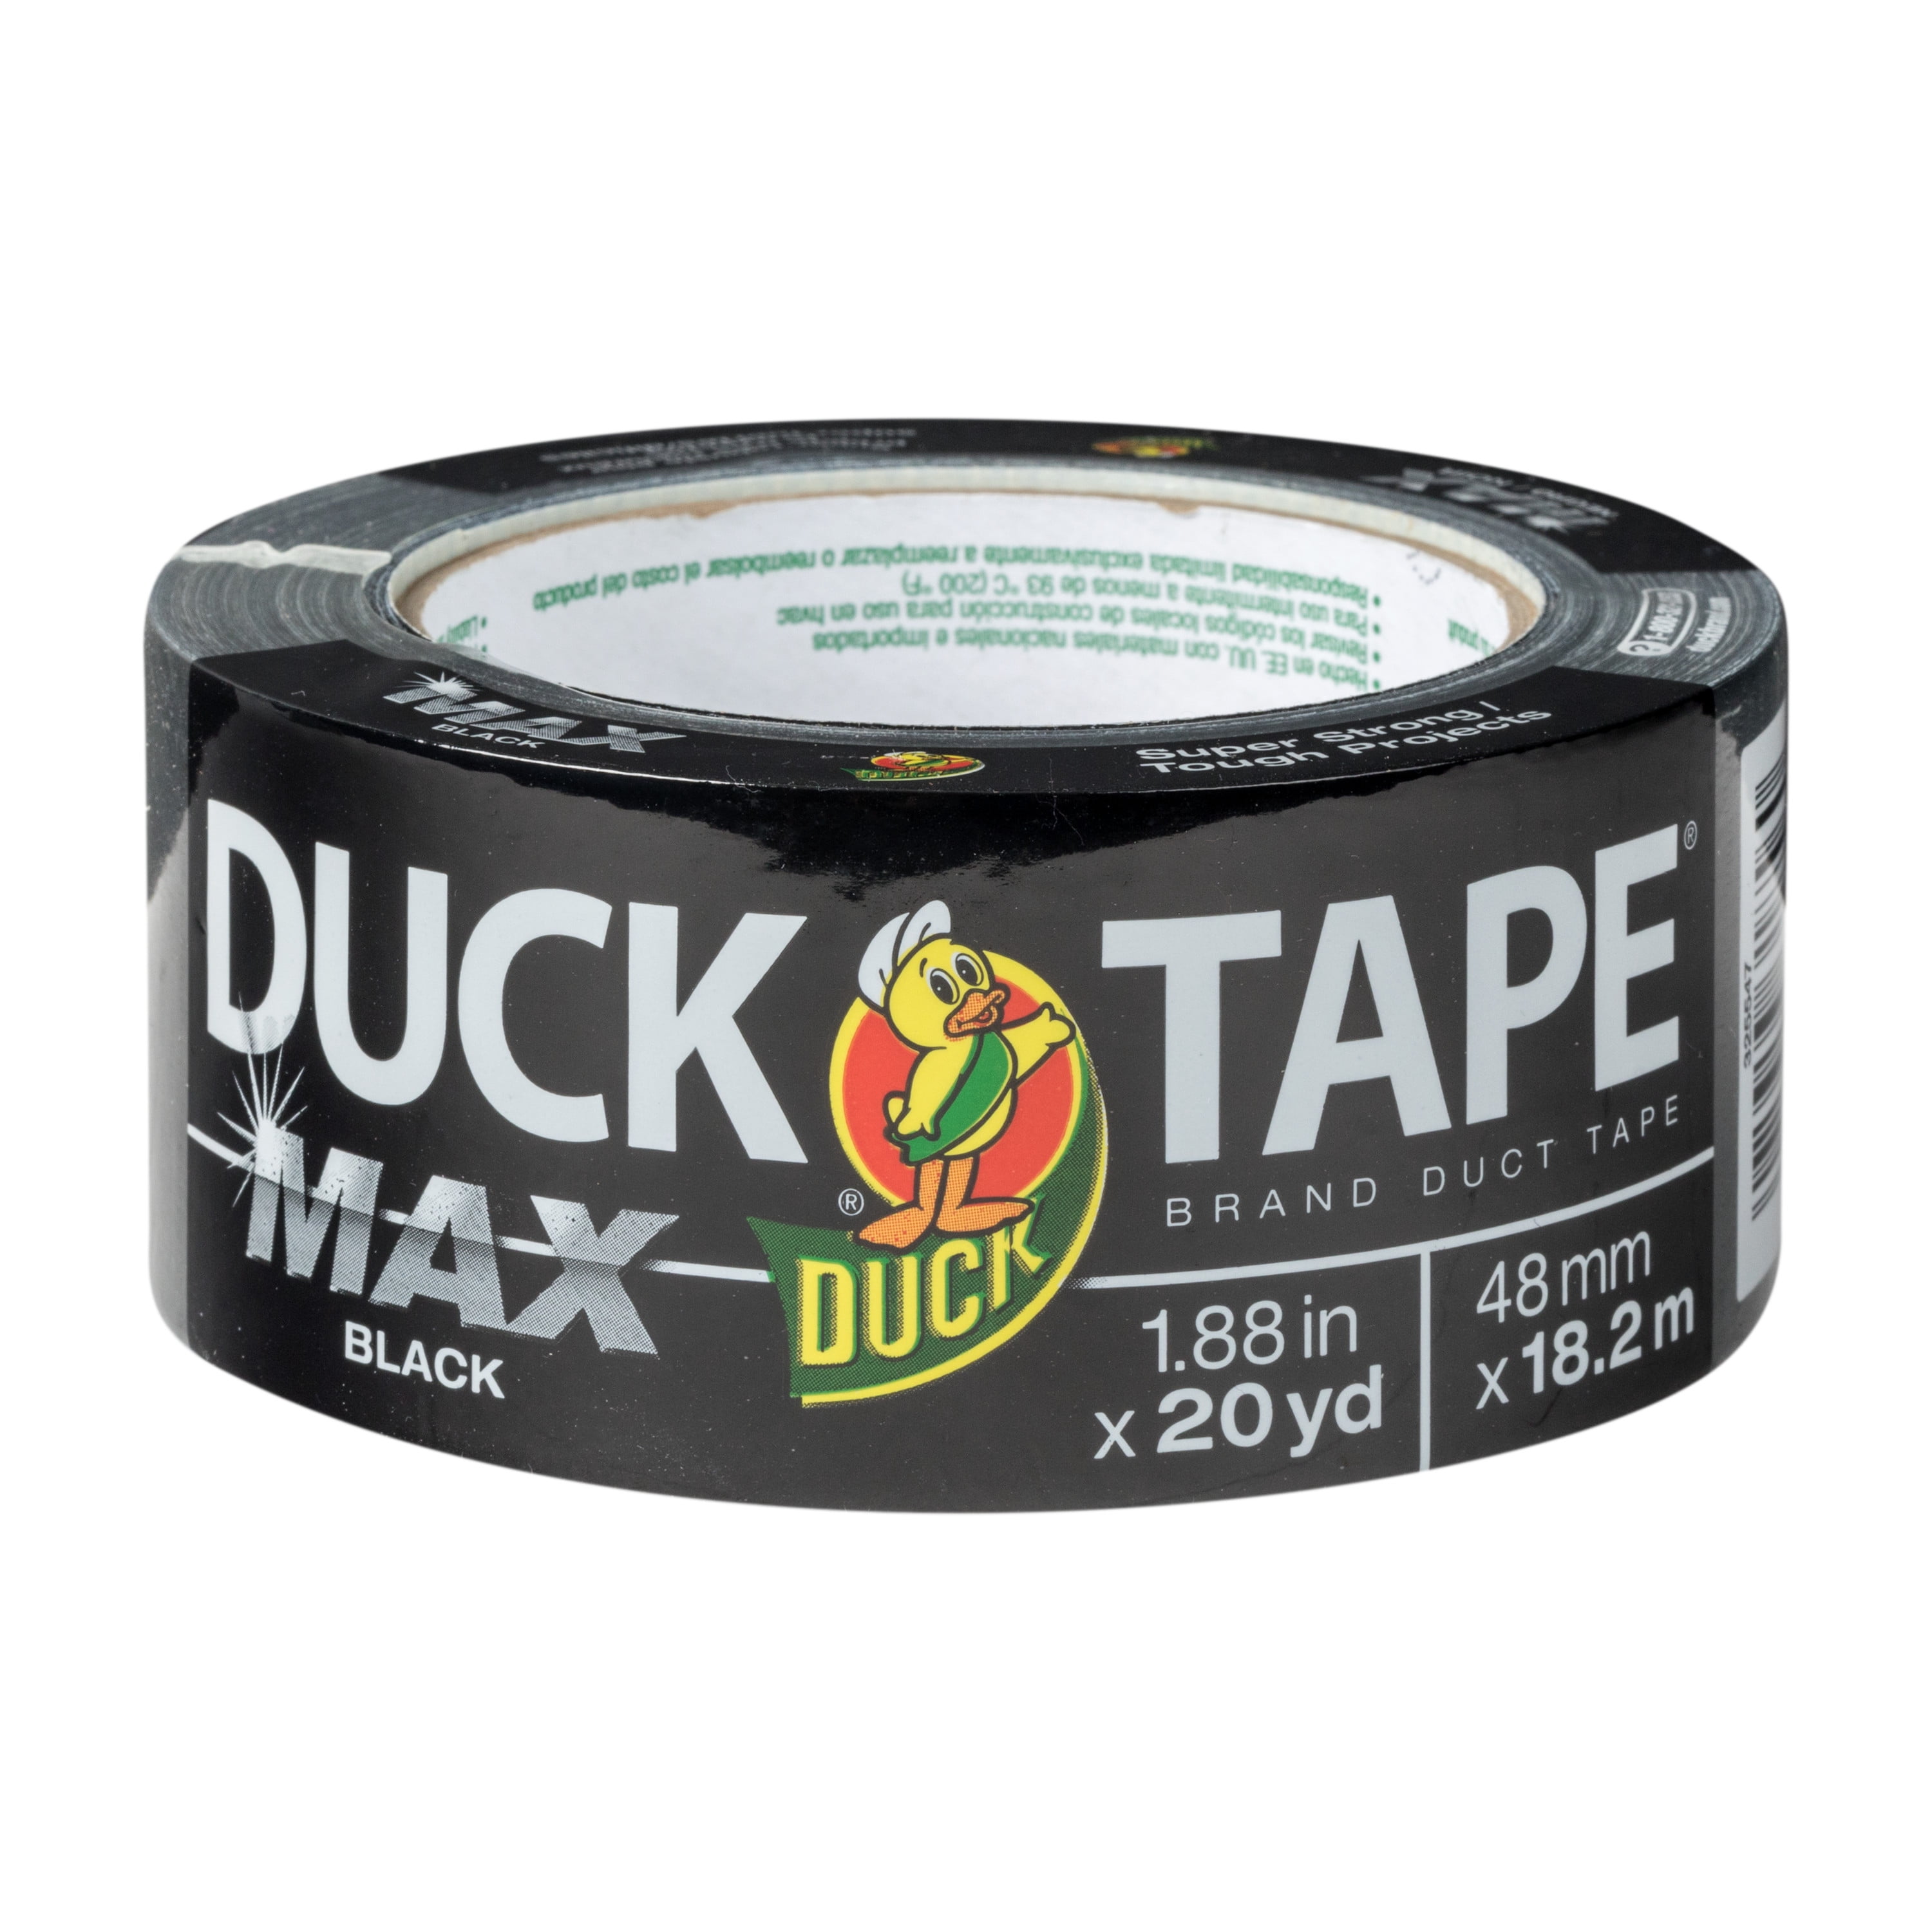 Geldschieter evenwichtig Sijpelen Duck Brand Max Strength 1.88 in x 20 yd Black Duct Tape Roll - Walmart.com